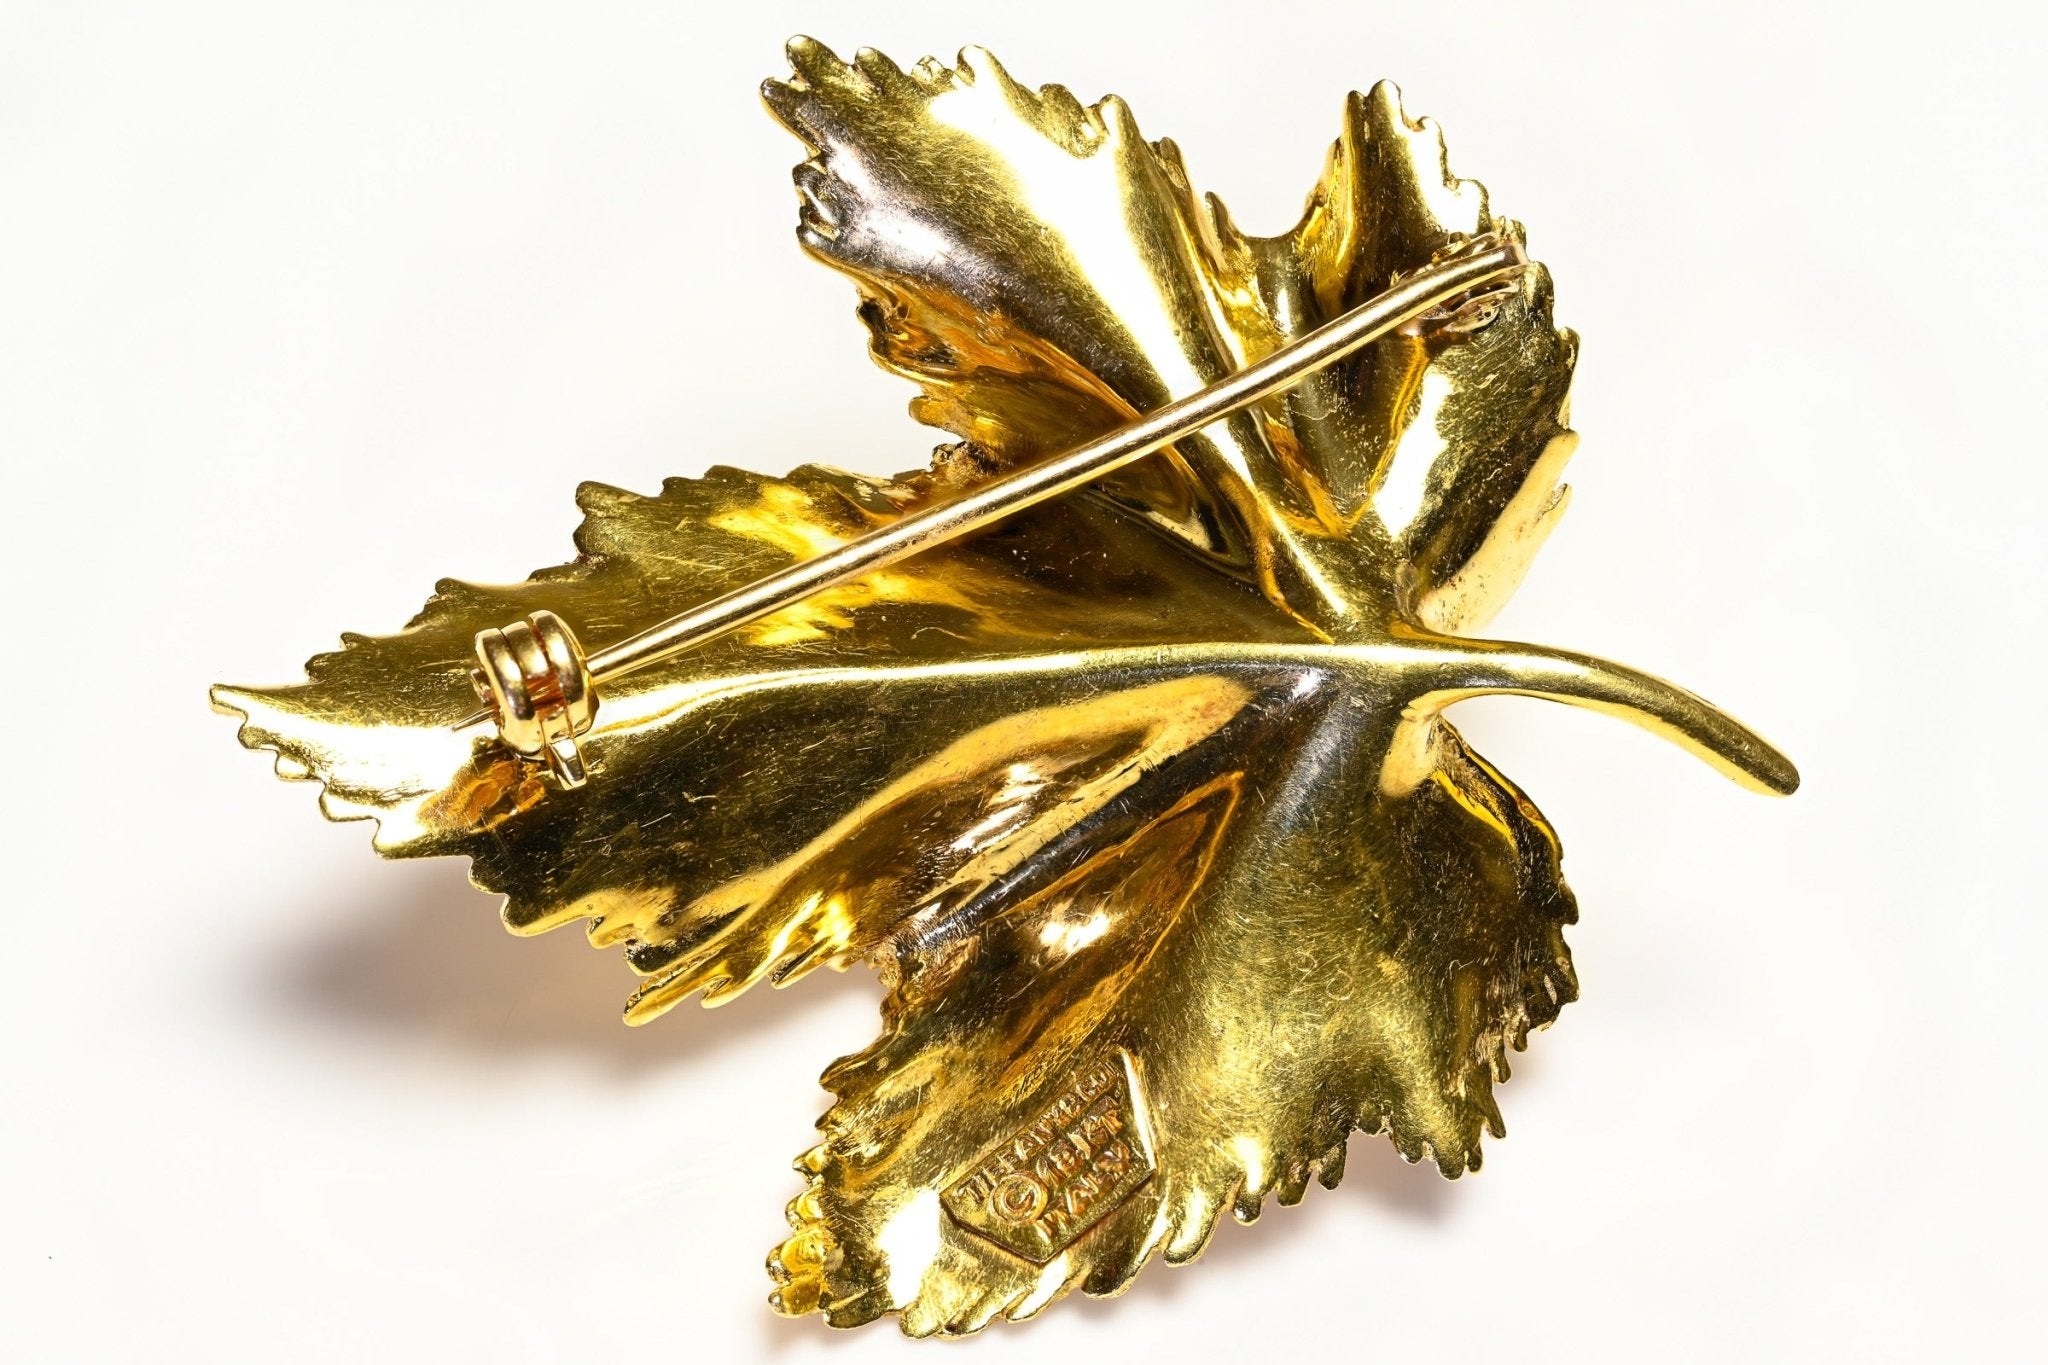 Tiffany & Co. 18K Yellow Gold Leaf Brooch